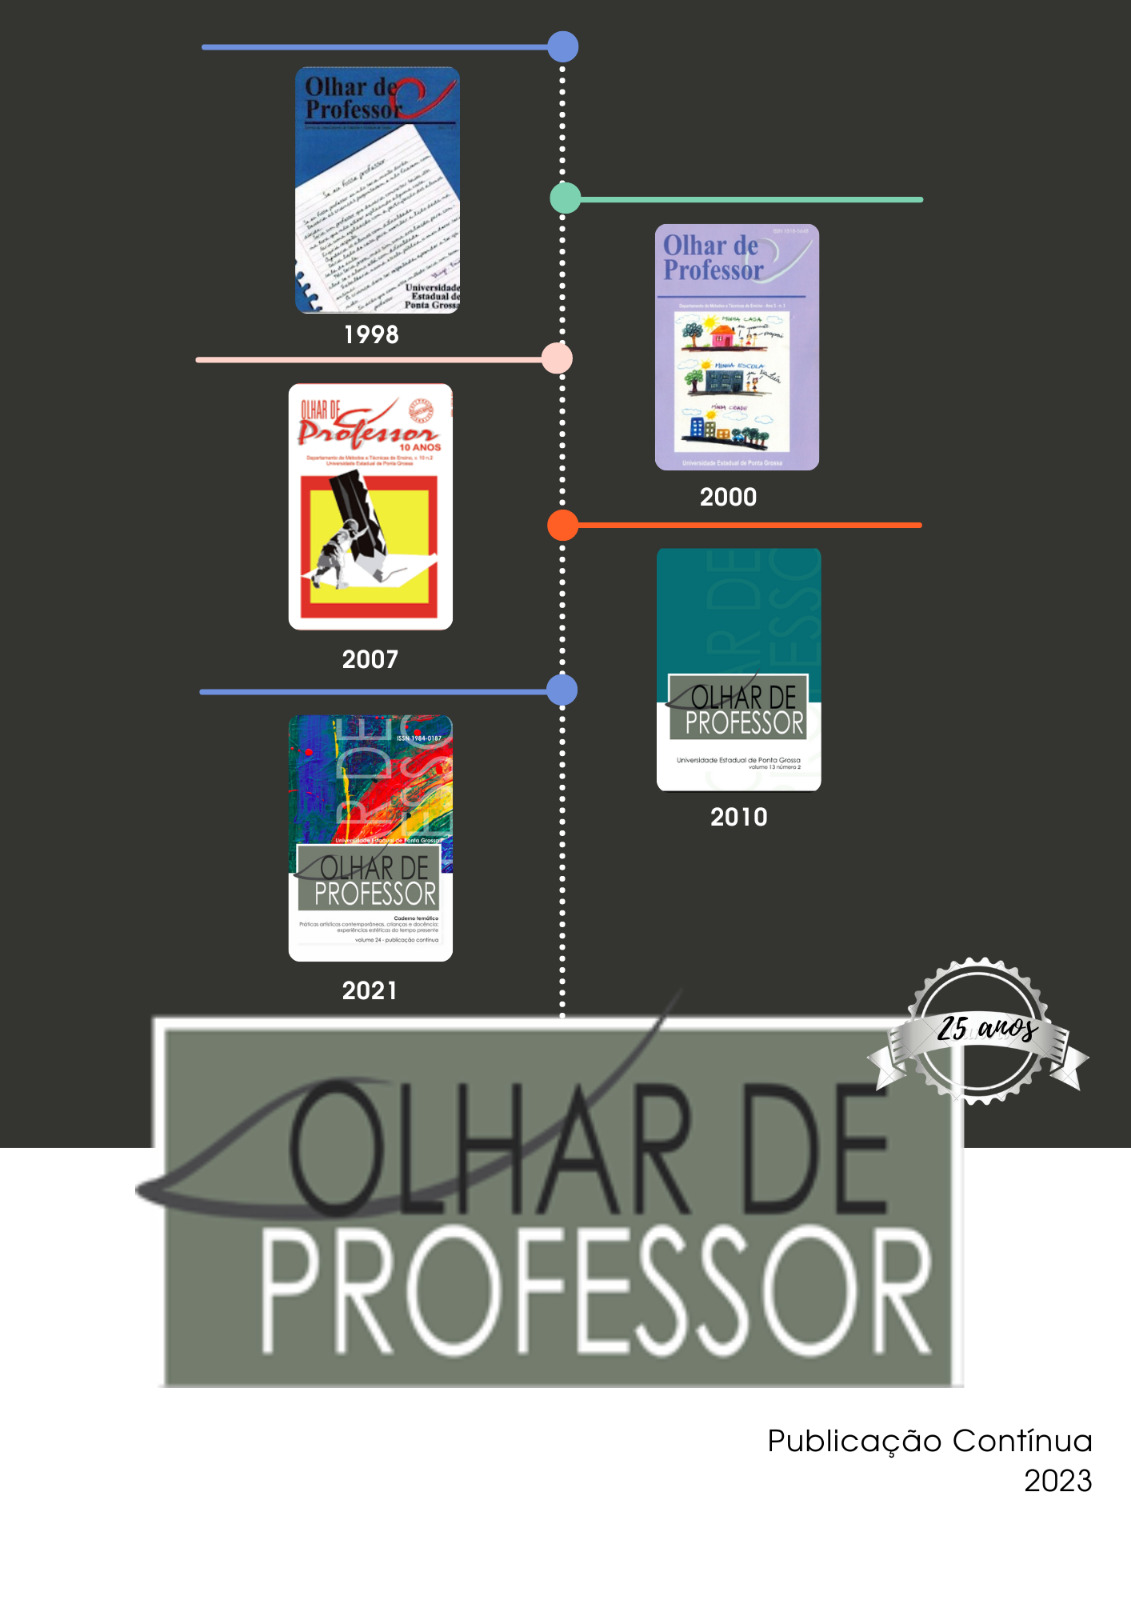 Estágios e Editais Acadêmicos - Direito UFMG